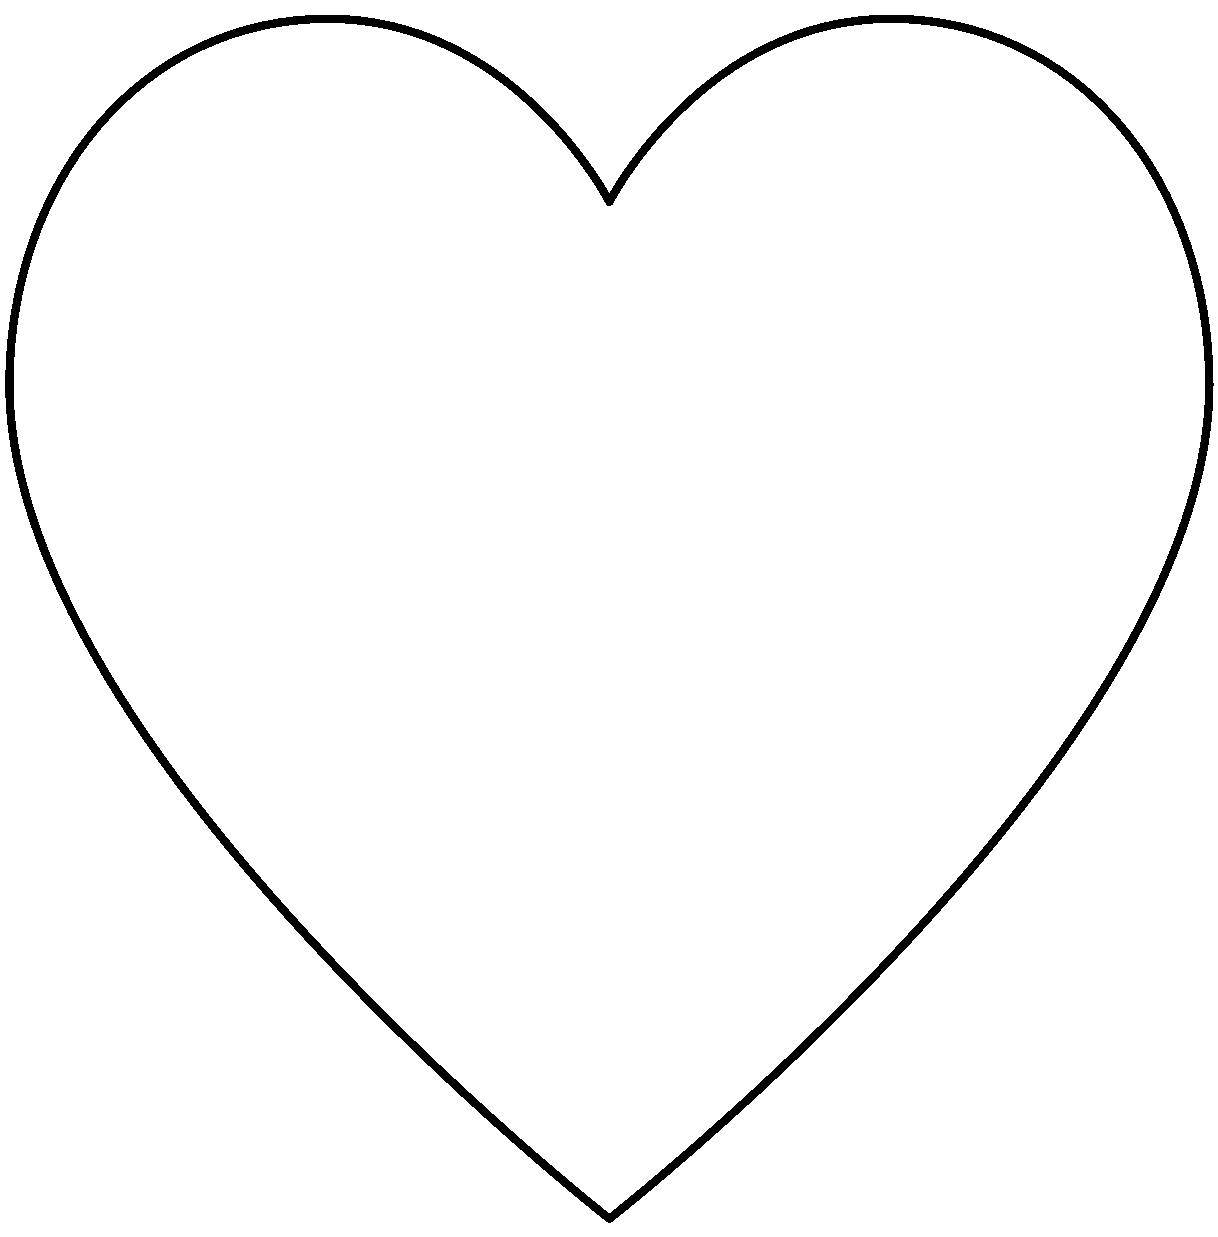 Heart - Traceable Heraldic Art